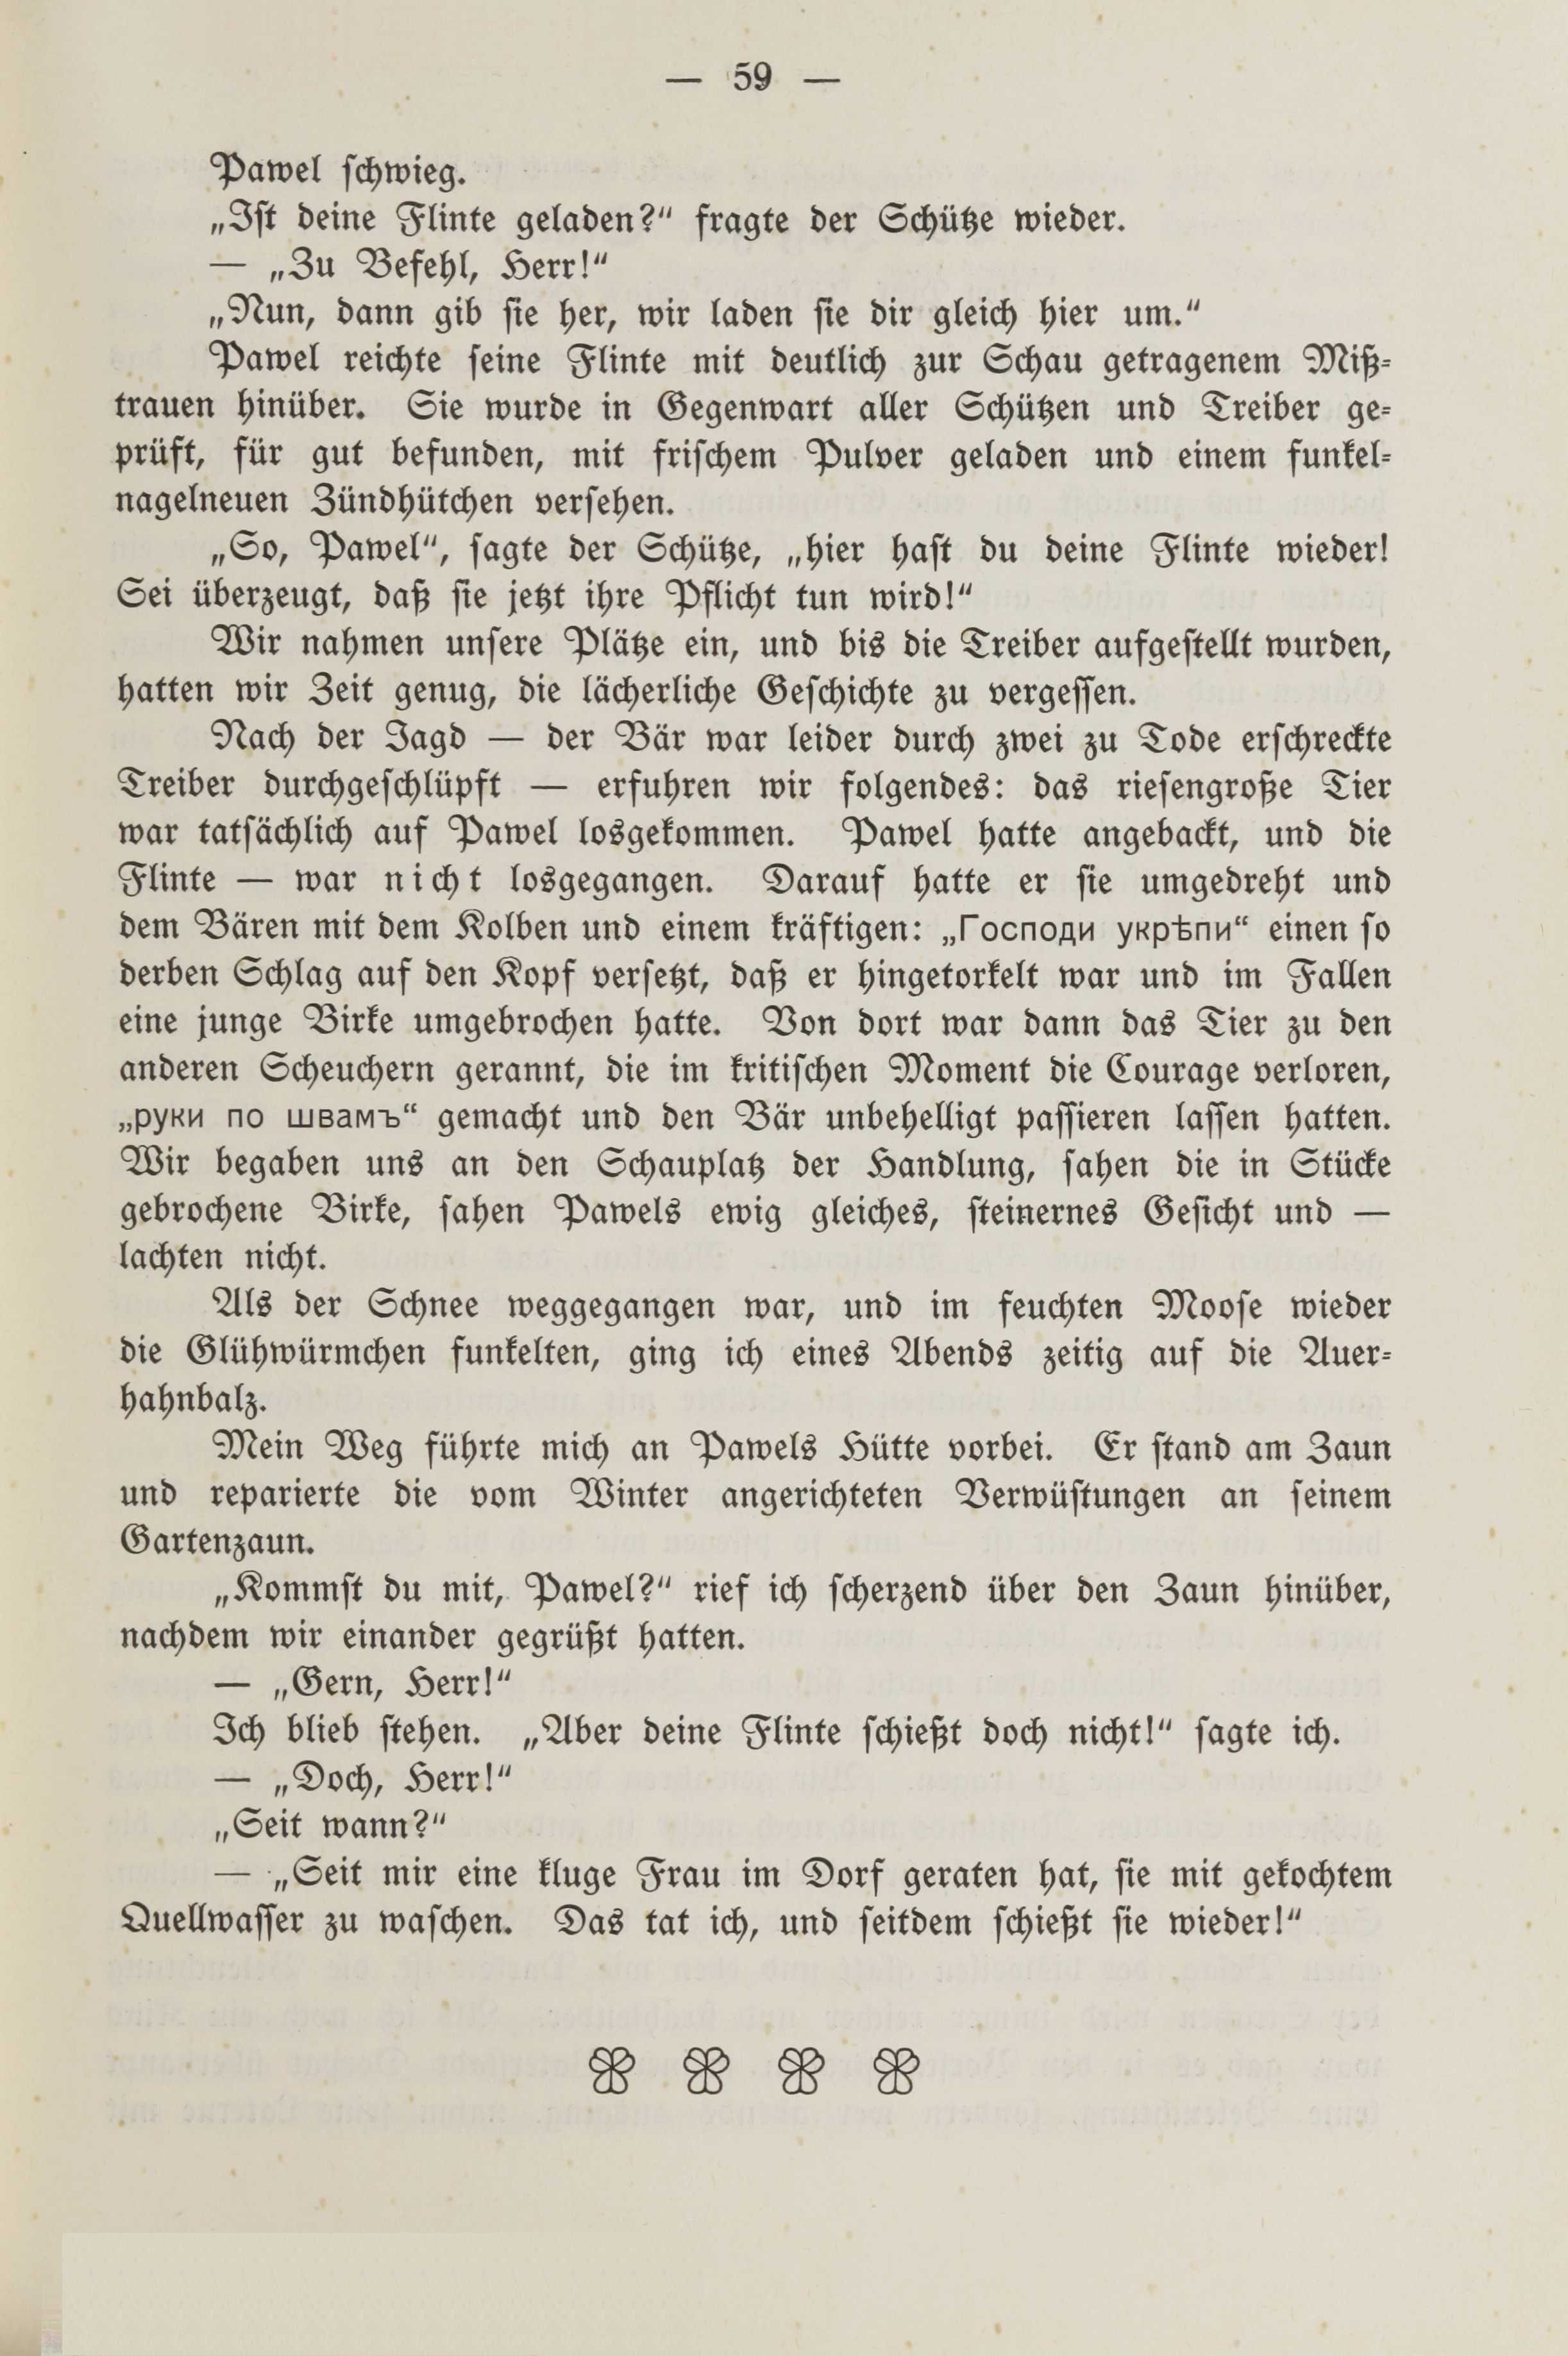 Deutsche Monatsschrift für Russland [2] (1913) | 63. (59) Основной текст